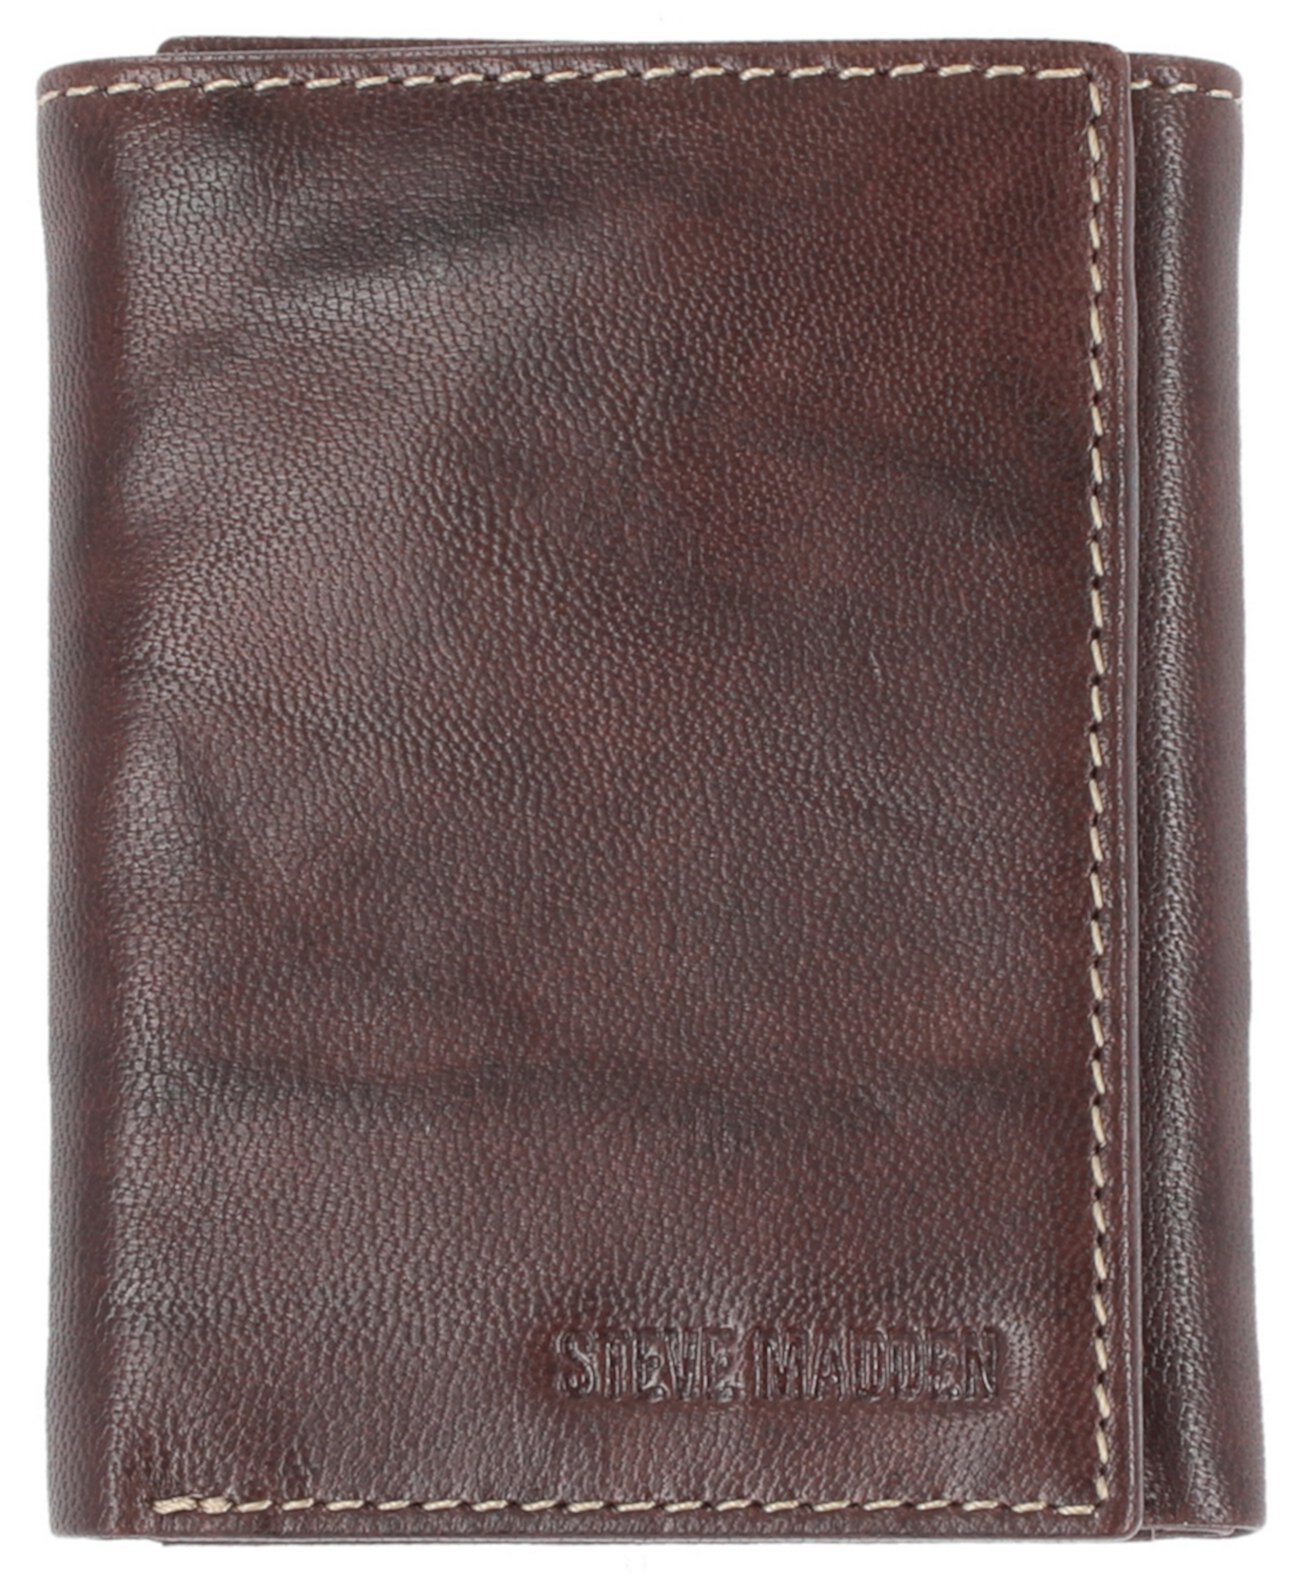 Men's Antique-like Trifold Wallet Steve Madden